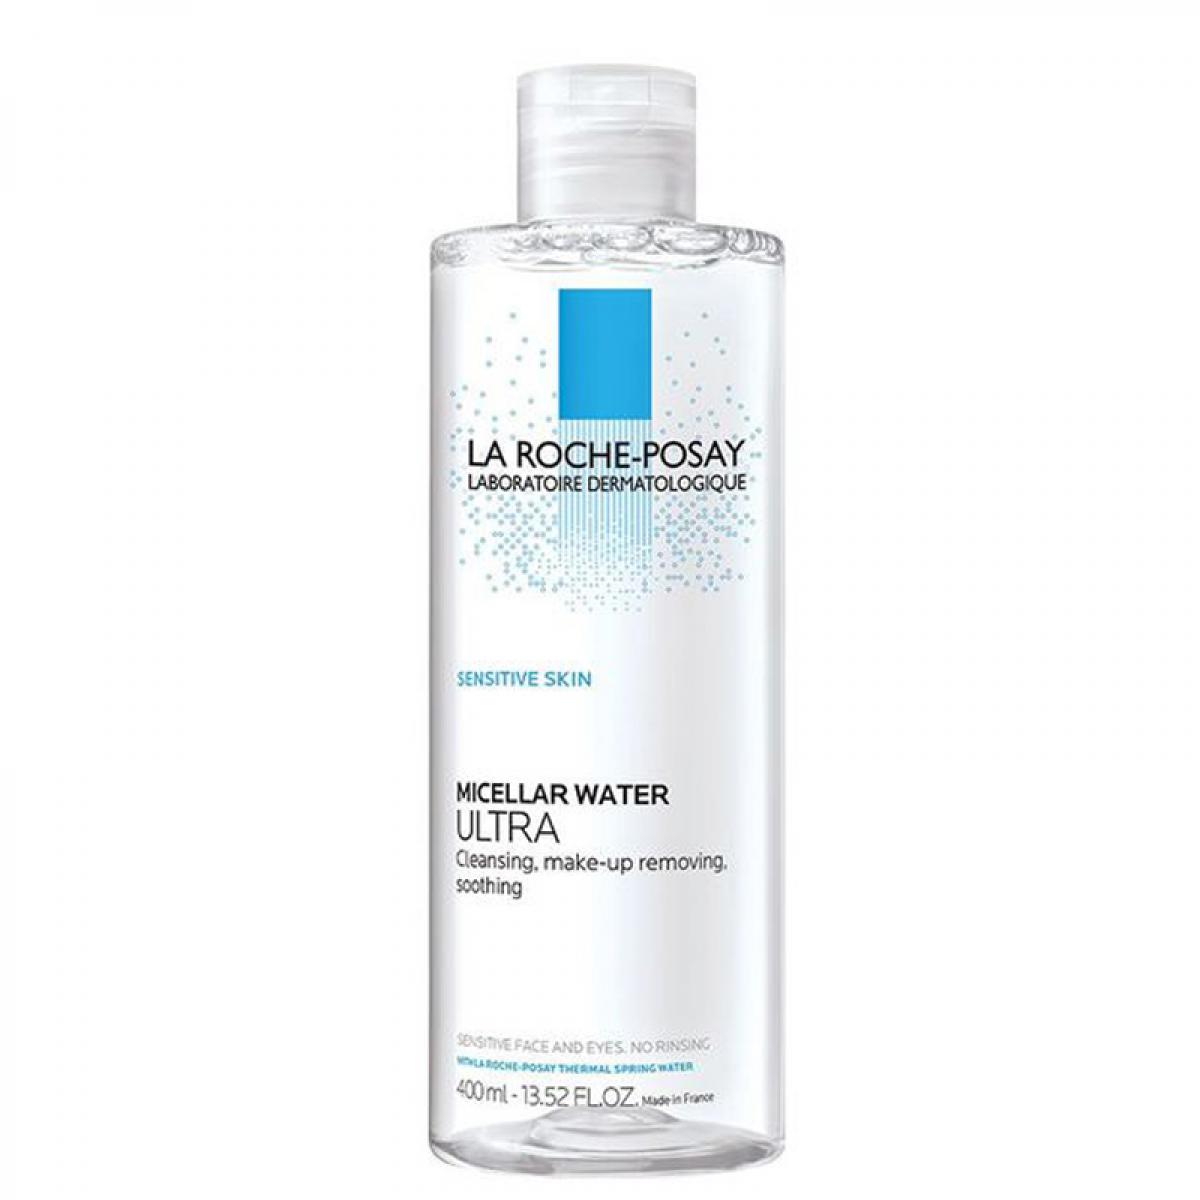 محلول پاک کننده آرایش پوست های بسیار حساس حجم 400 میل -  La Roche Posay Micellar Water Ultra Makeup Removing For Sensitive Skin 400ml